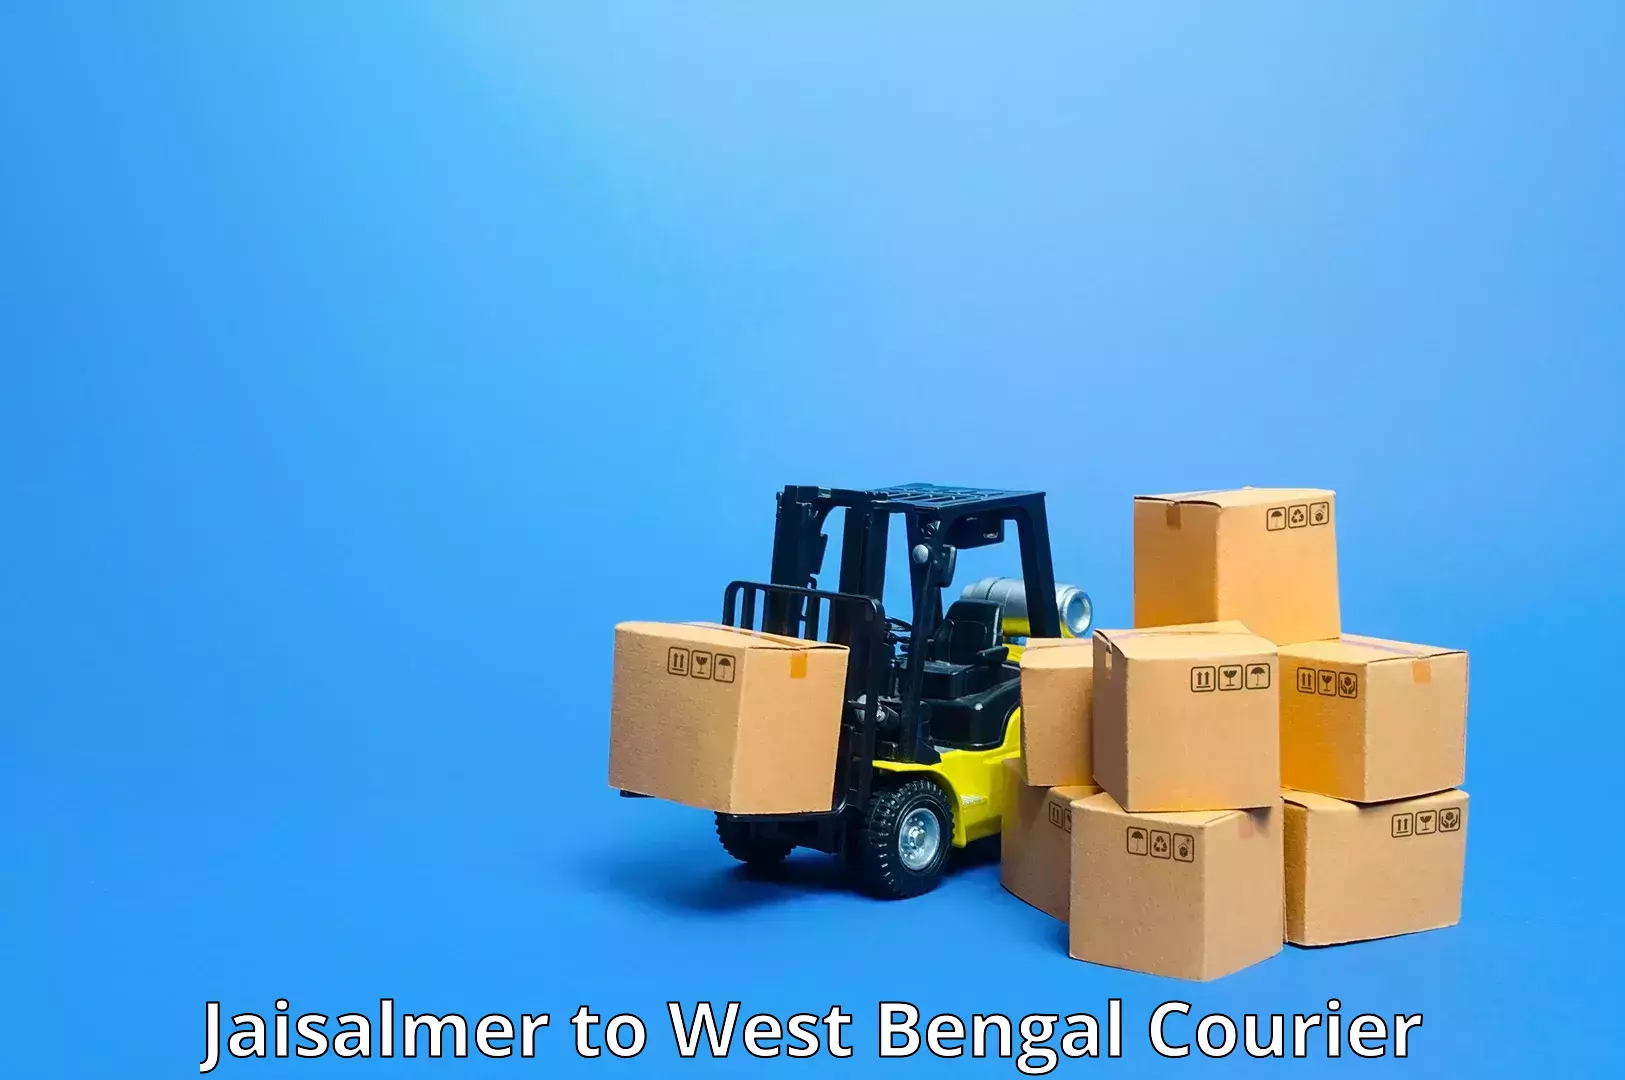 Domestic courier Jaisalmer to Kolkata Port